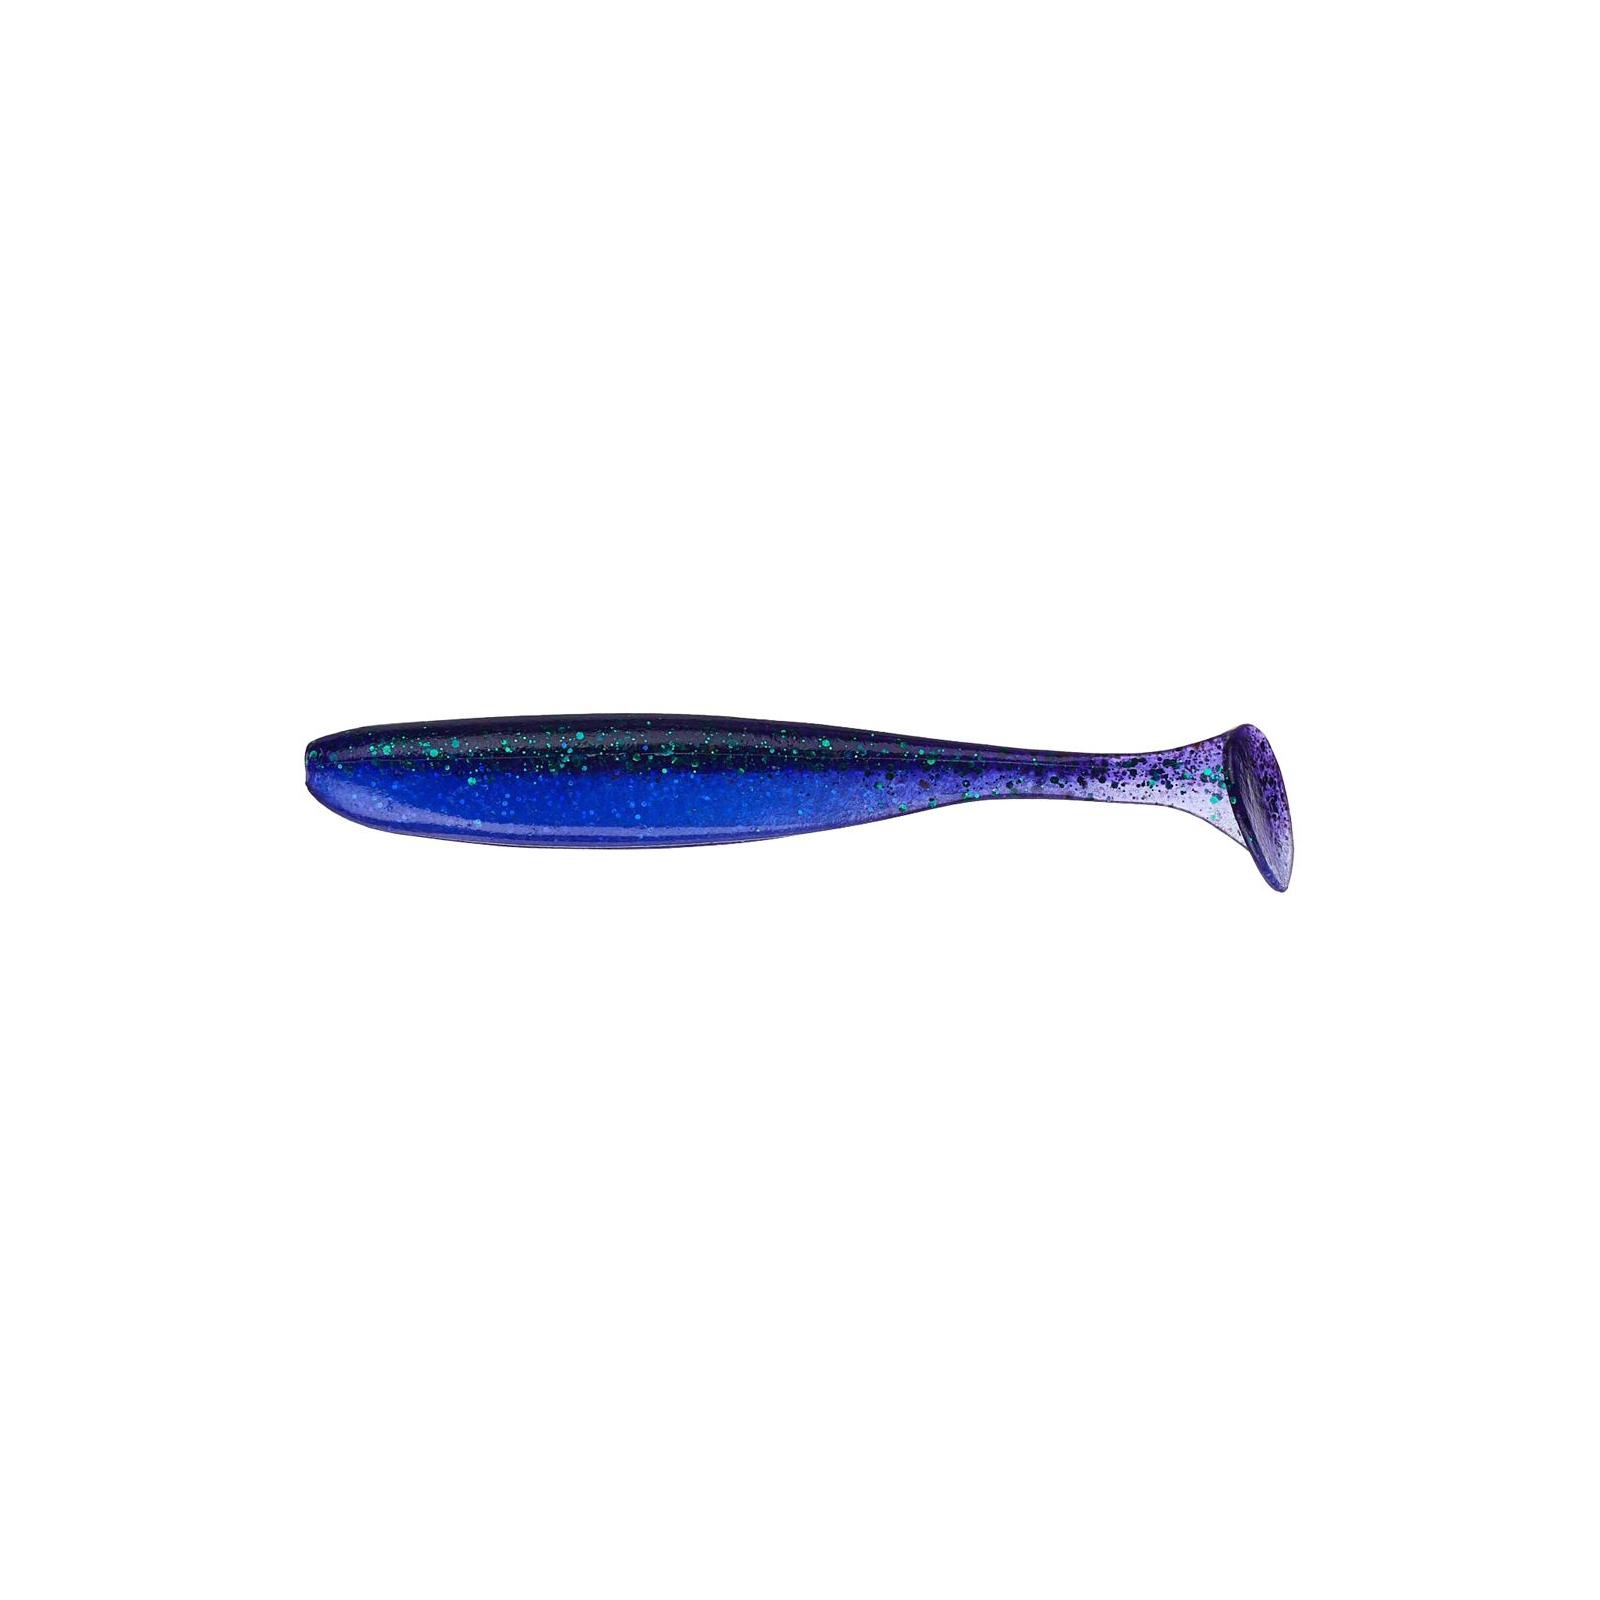 Силикон рыболовный Keitech Easy Shiner 2" (12 шт/упак) ц:408 electric june bug (1551.05.37)